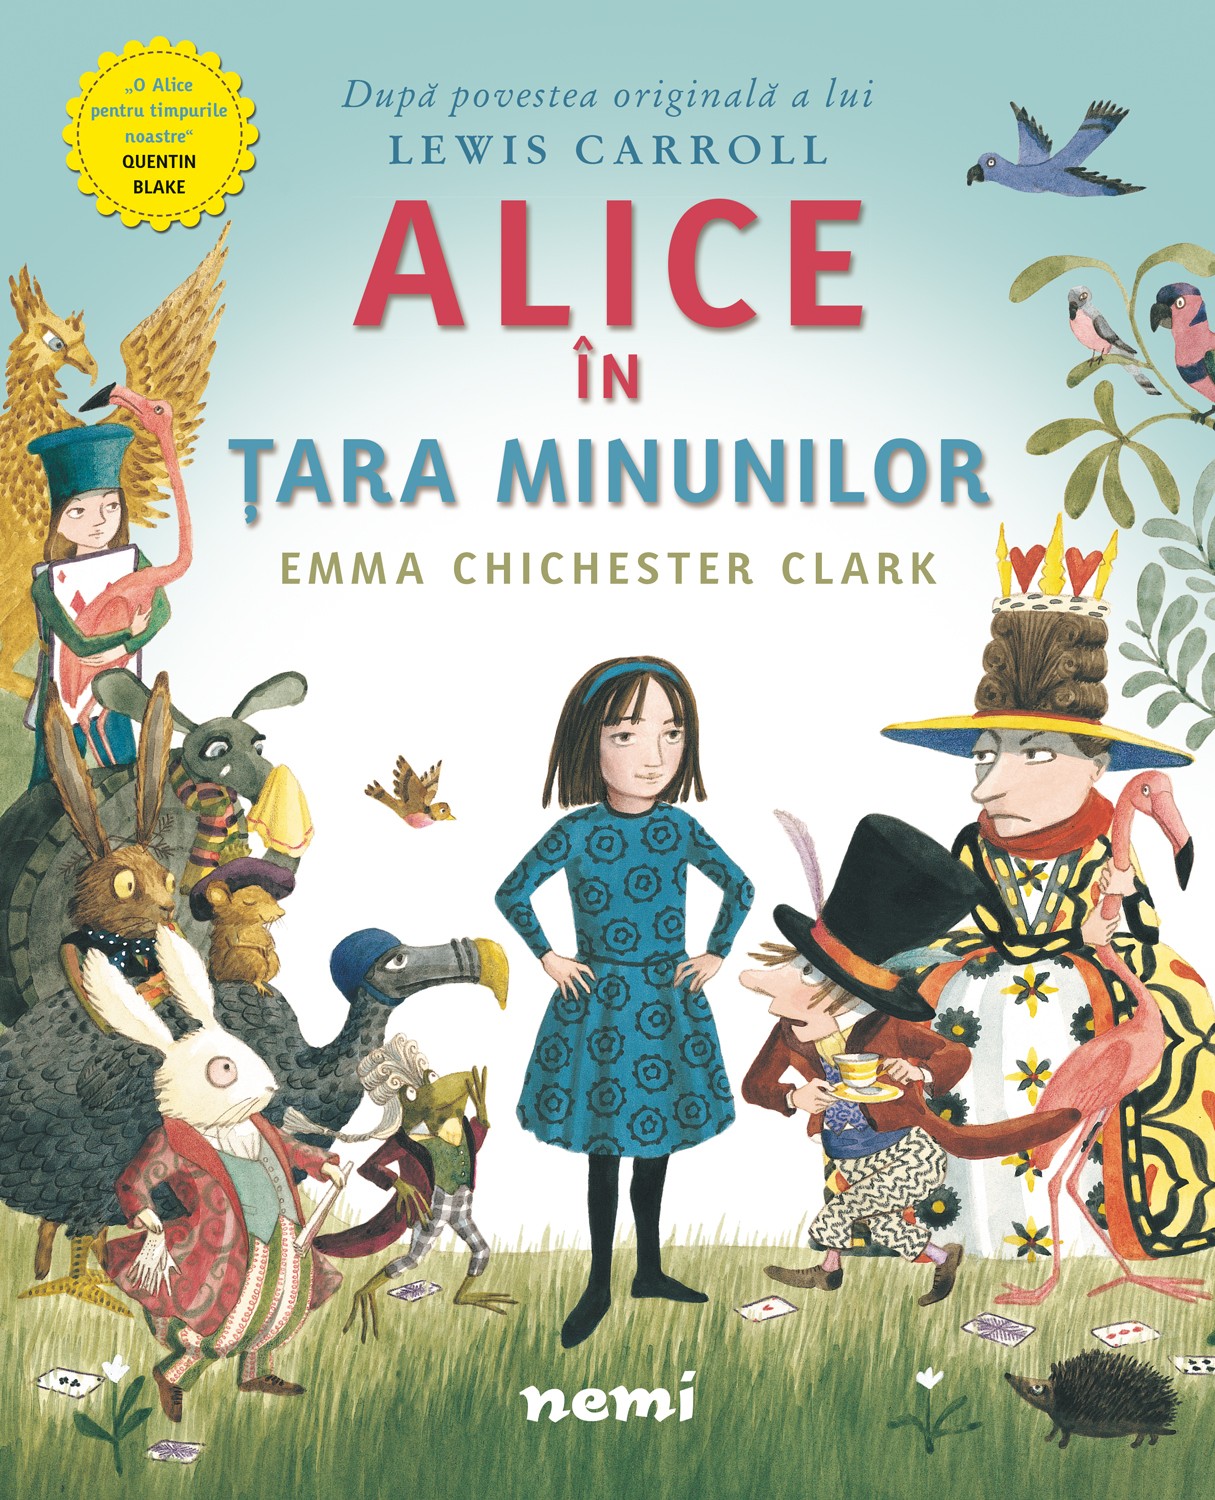 Алиса в стране чудес книга автор. Кэрролл Льюис "Алиса в стране чудес". Книга Кэрролл Алиса в стране чудес. Алиса в стране чудес обложка книги. Зарубежные книги для детей.